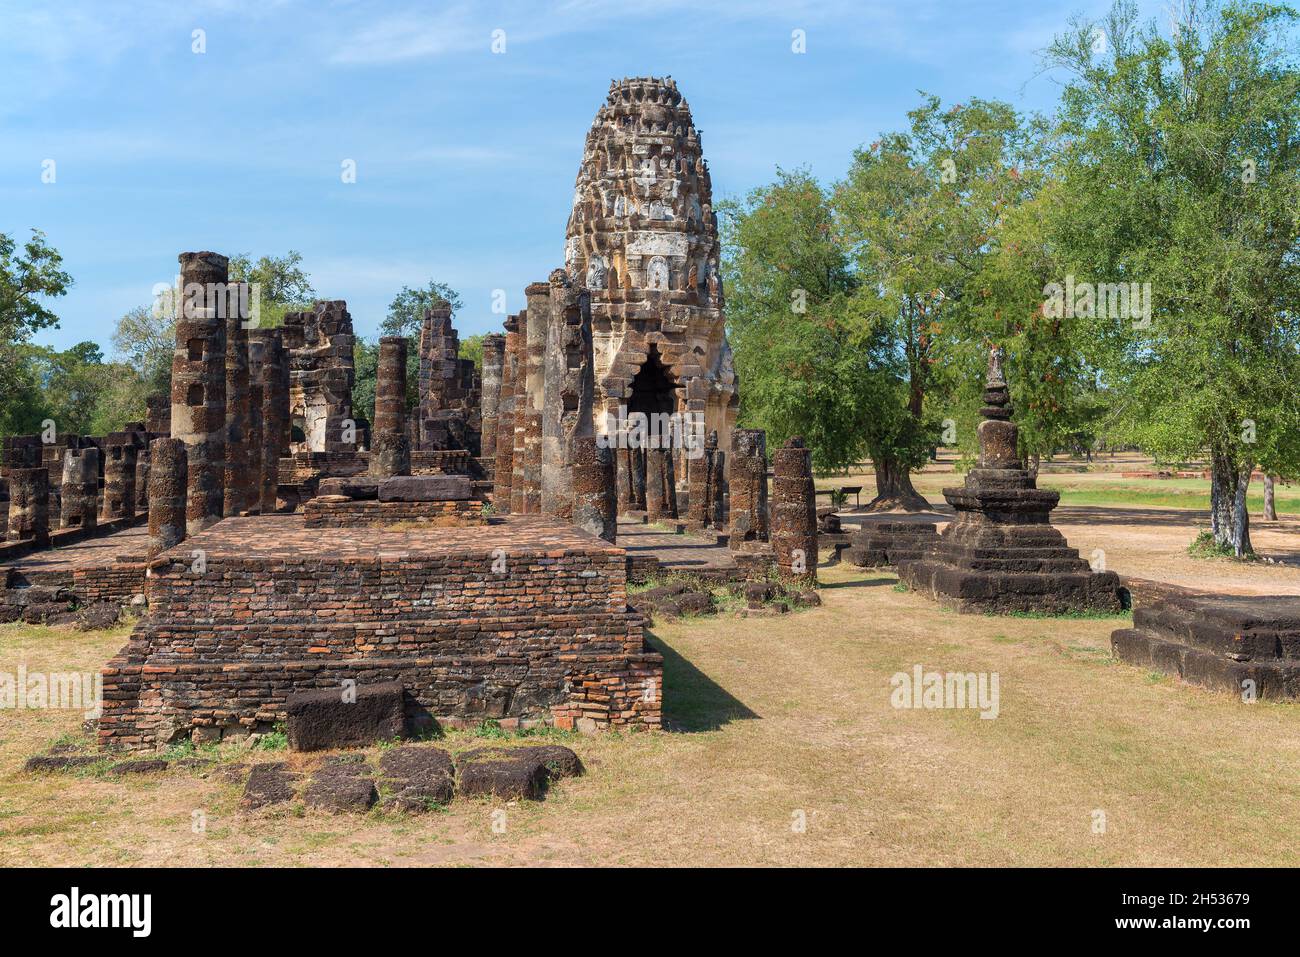 Aux ruines de l'ancien temple bouddhiste Wat Phra Pai Luang.Parc historique de la ville de Sukhothai, Thaïlande Banque D'Images